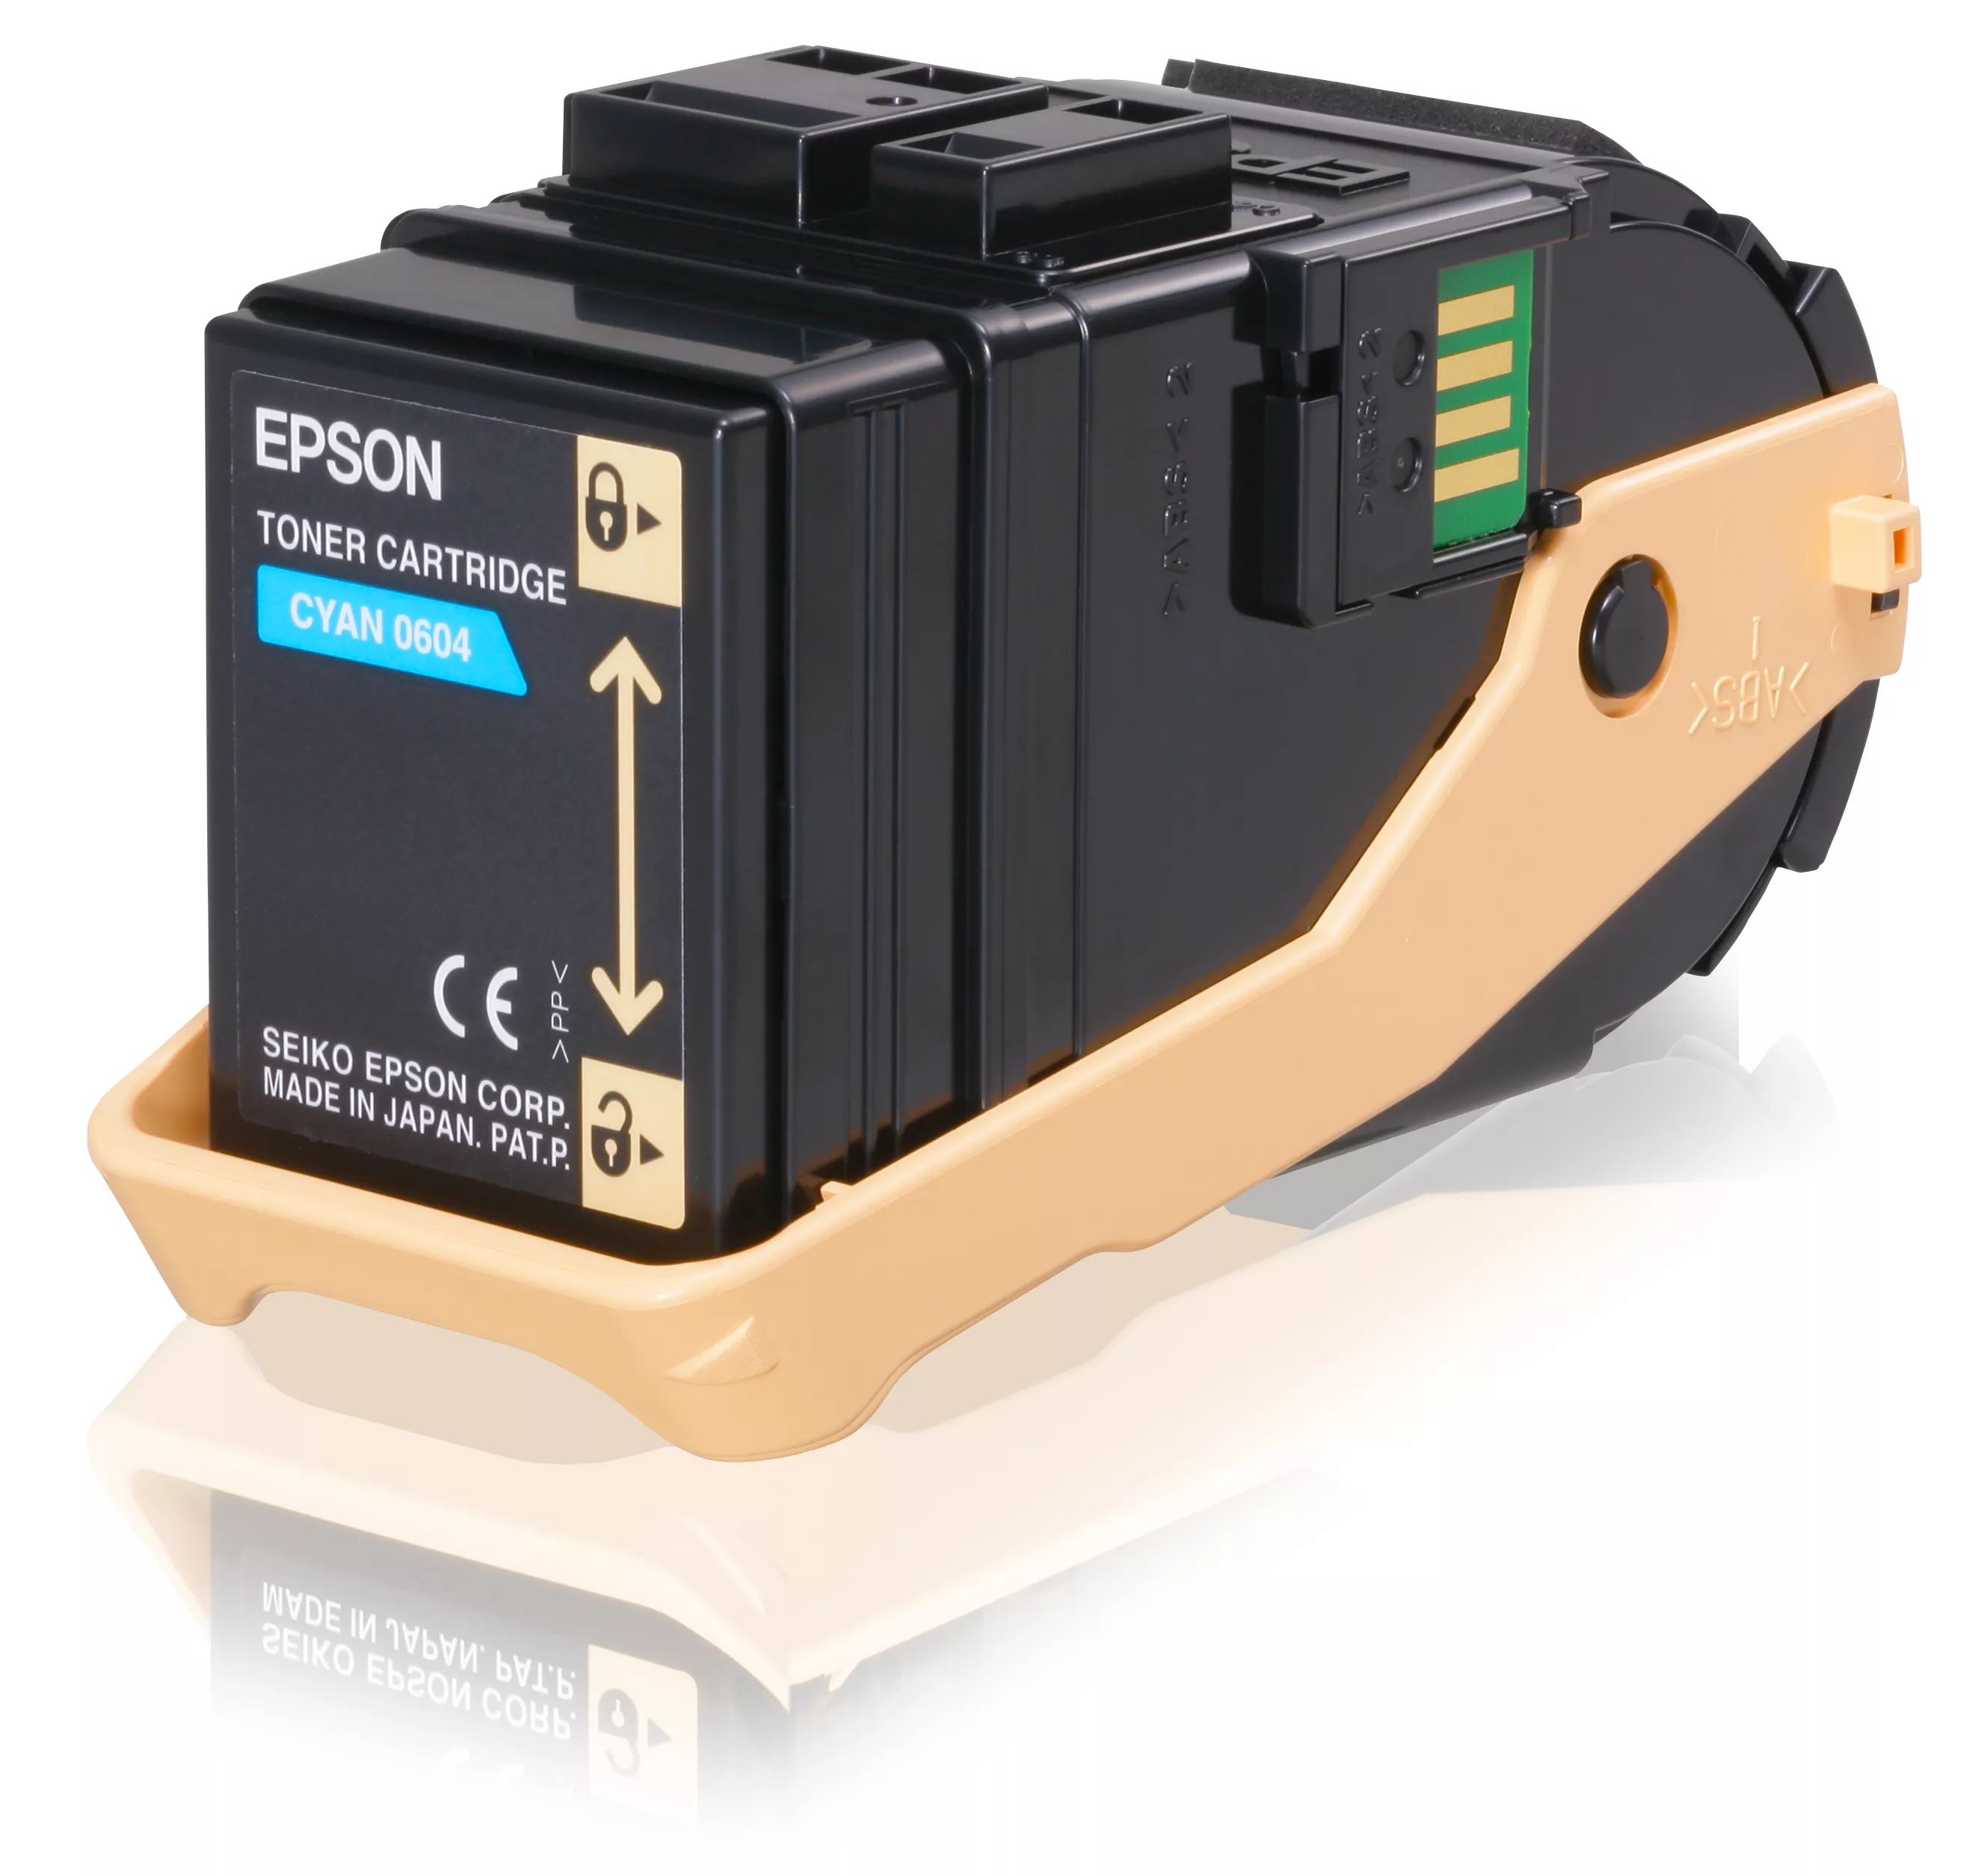 Revendeur officiel EPSON AL-C9300N cartouche de toner cyan capacité